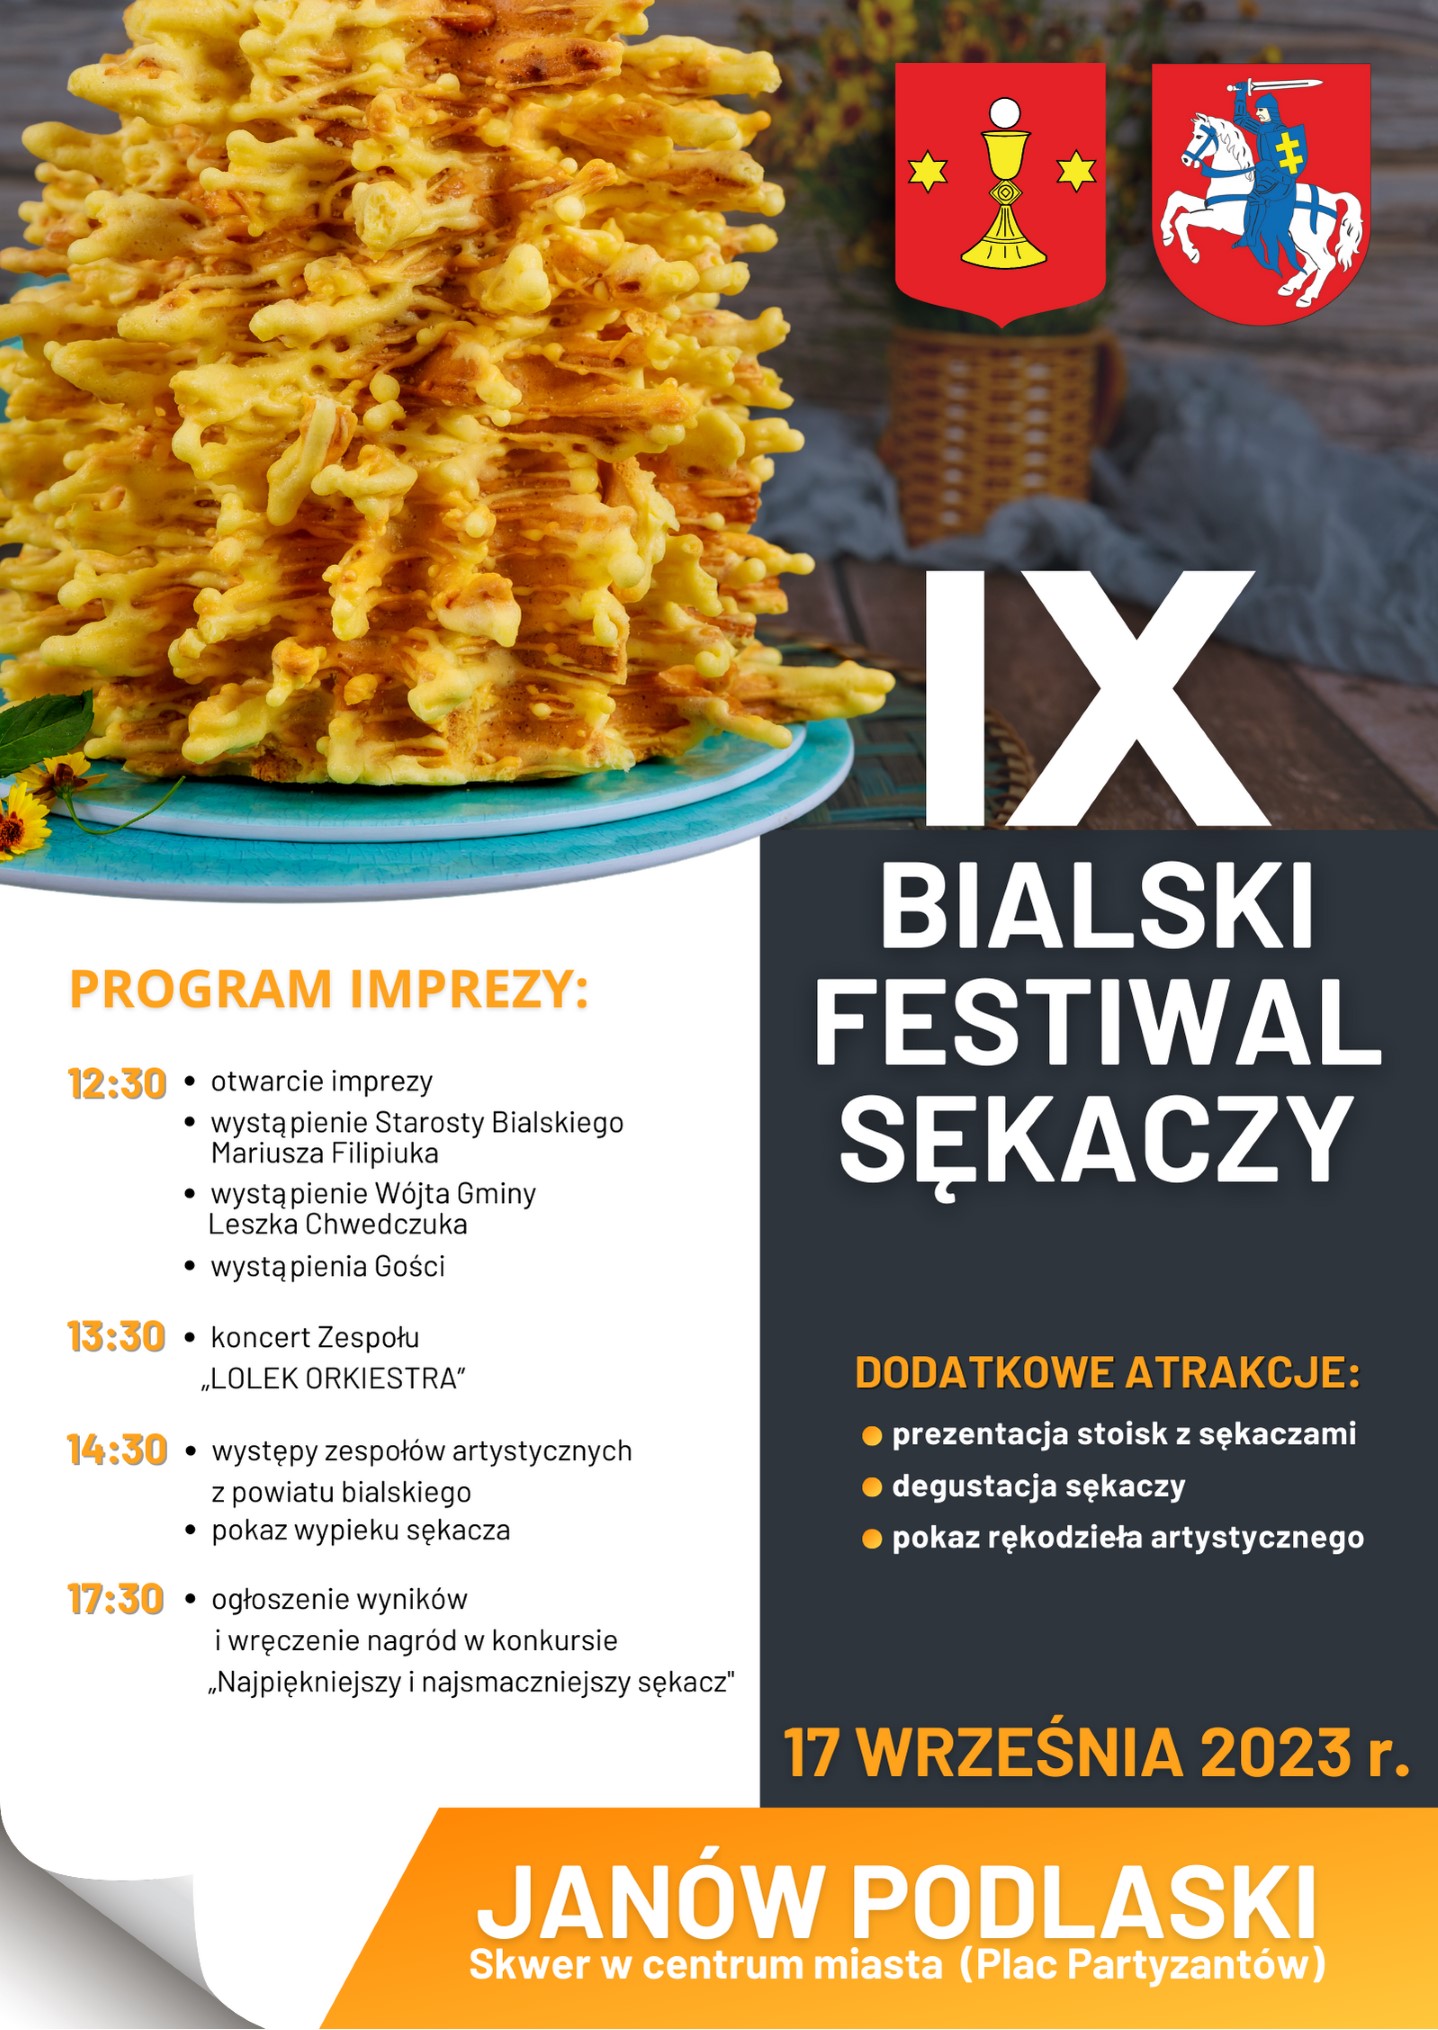 IX Bialski Festiwal Sękaczy. Impreza odbędzie się 17 września 2023r. w Janowie Podlaskim.